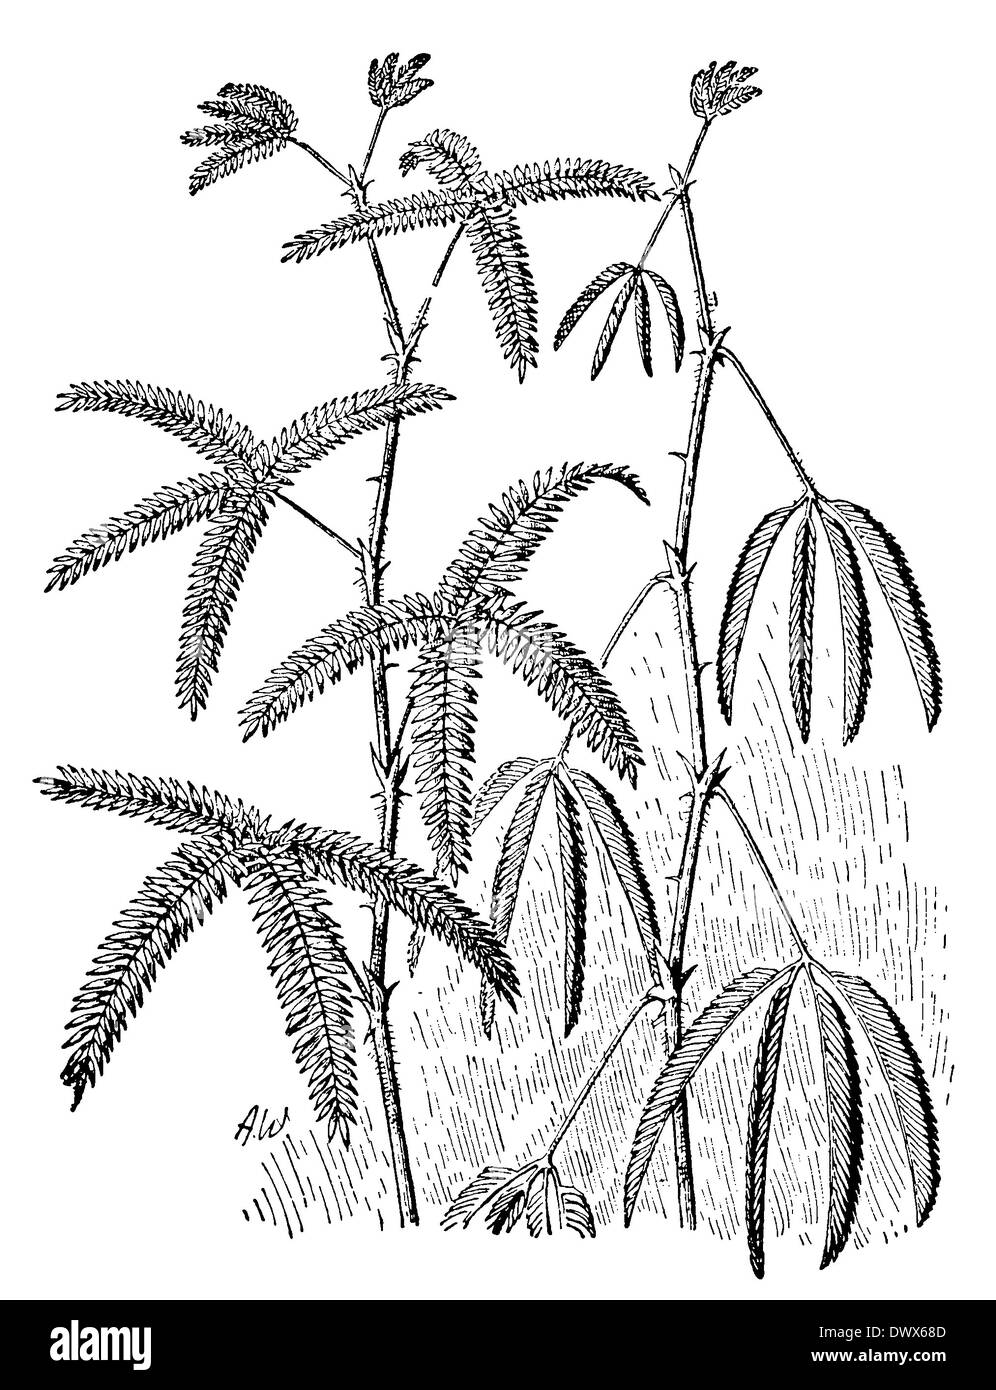 Mimosa, plante sensitive, avant gauche, droite après contact Banque D'Images